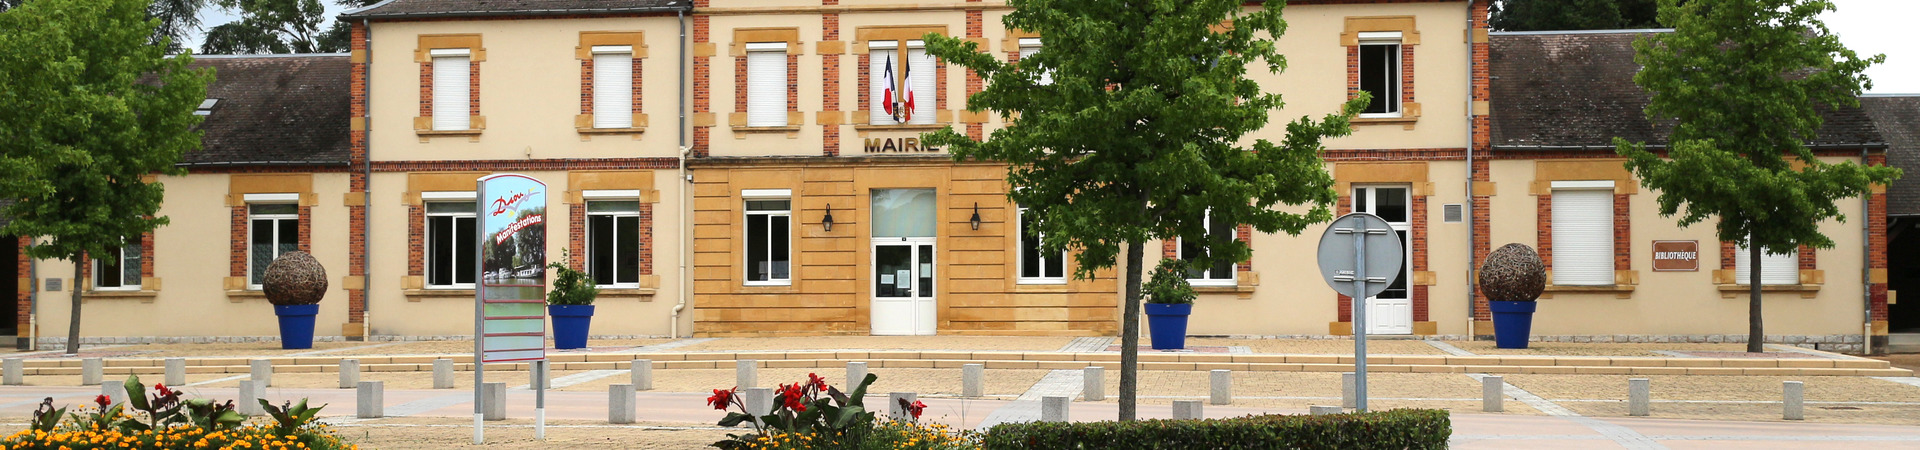 Mairie - site officiel de la ville de Diou 03290